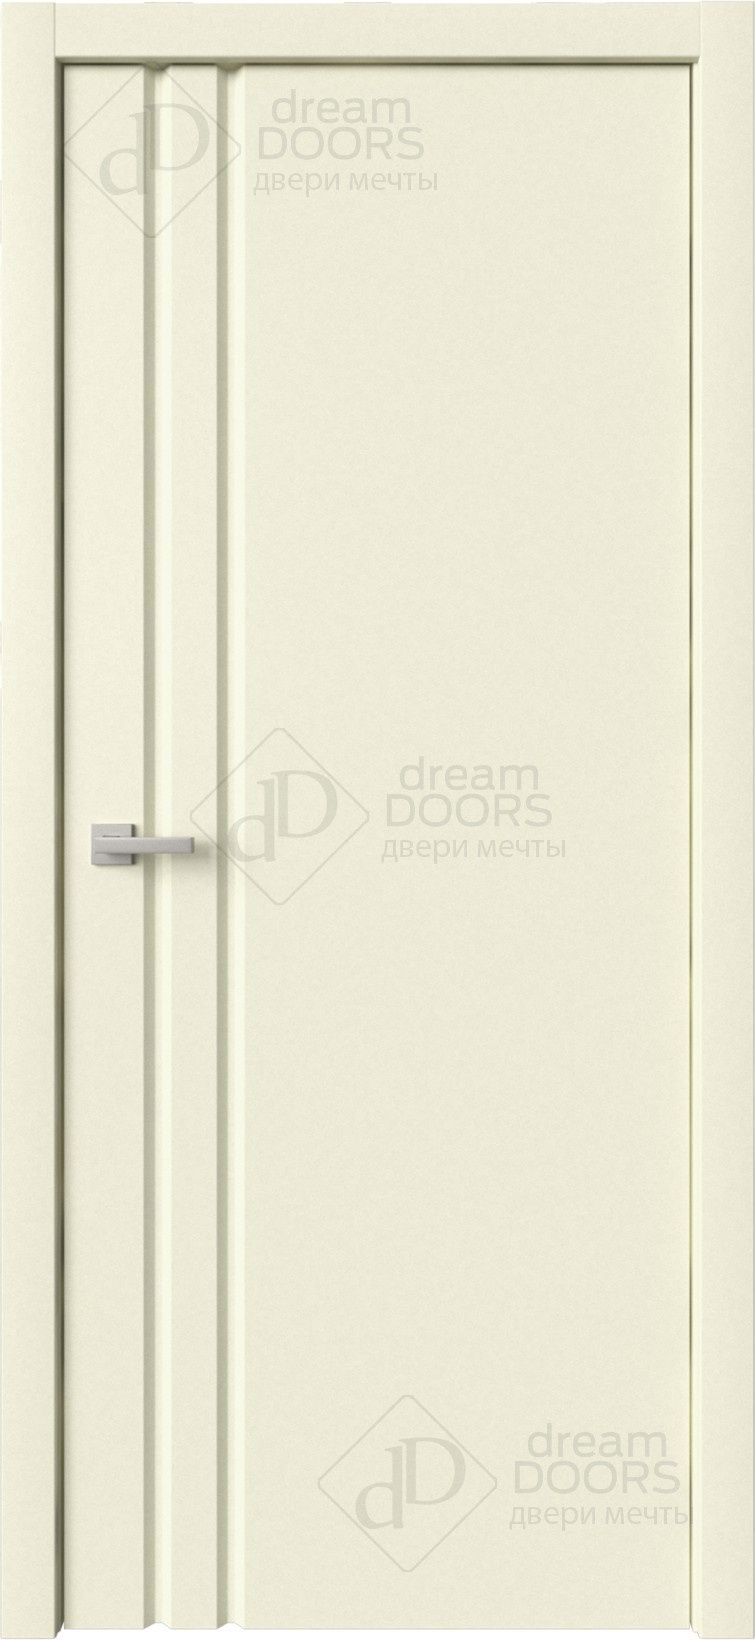 Dream Doors Межкомнатная дверь Стиль 1 узкое ПГ, арт. 6269 - фото №5